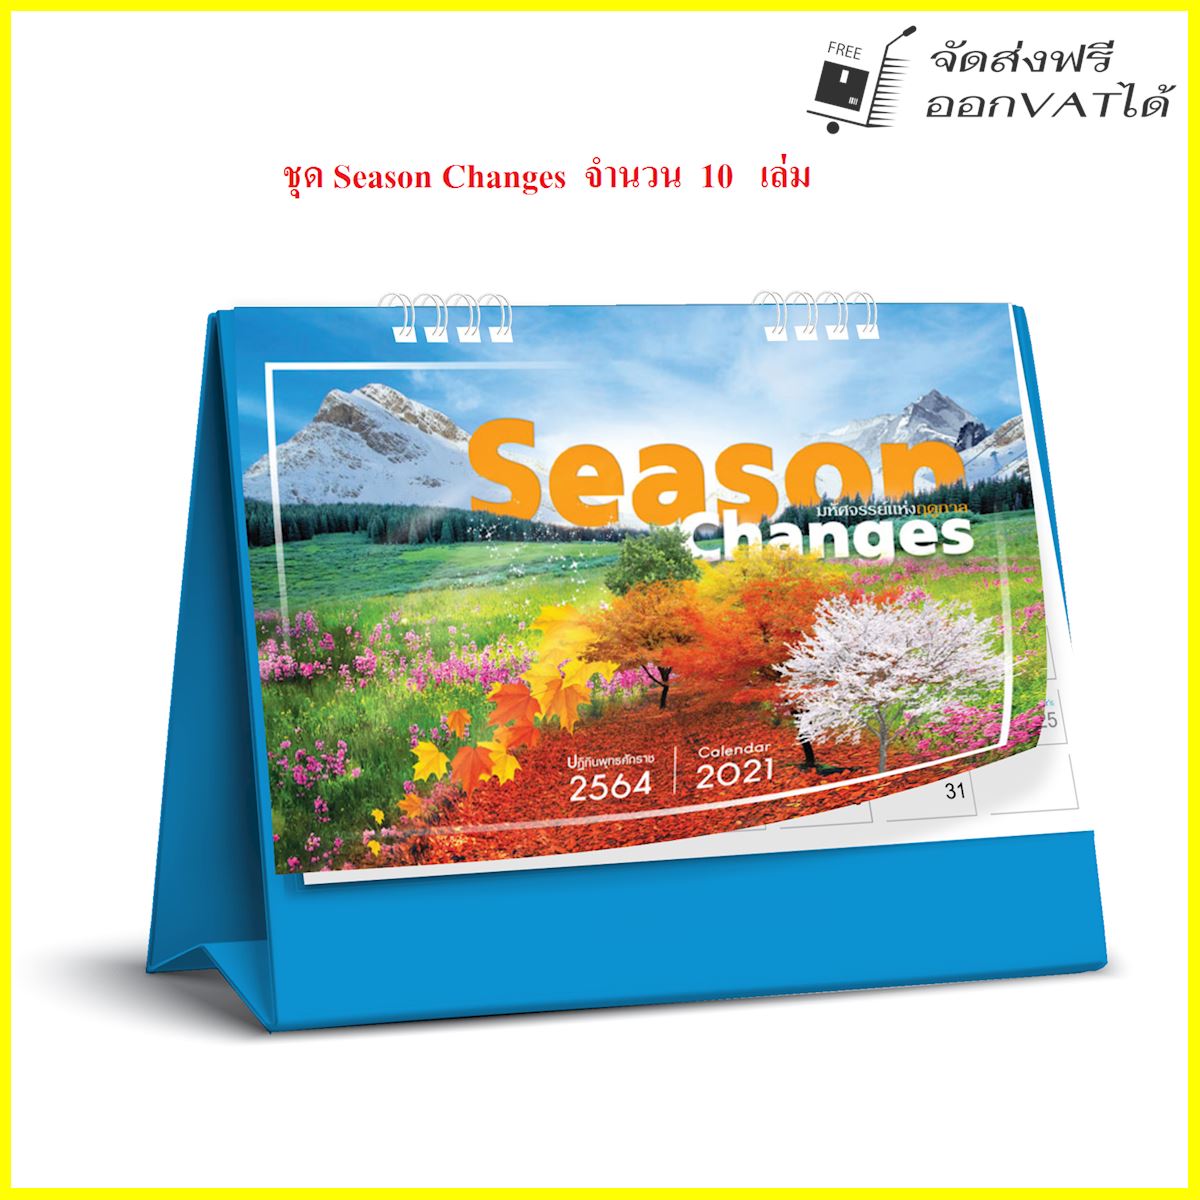 ปฏิทิน ตั้งโต๊ะ 2564 Calendar 2021 ชุด Season Changes_มหัศจรรย์แห่งฤดูกาล จำนวน 10 เล่ม ขนาด 6*8 นิ้ว แนวนอน จำนวน 14 แผ่น รวมโปสการ์ด